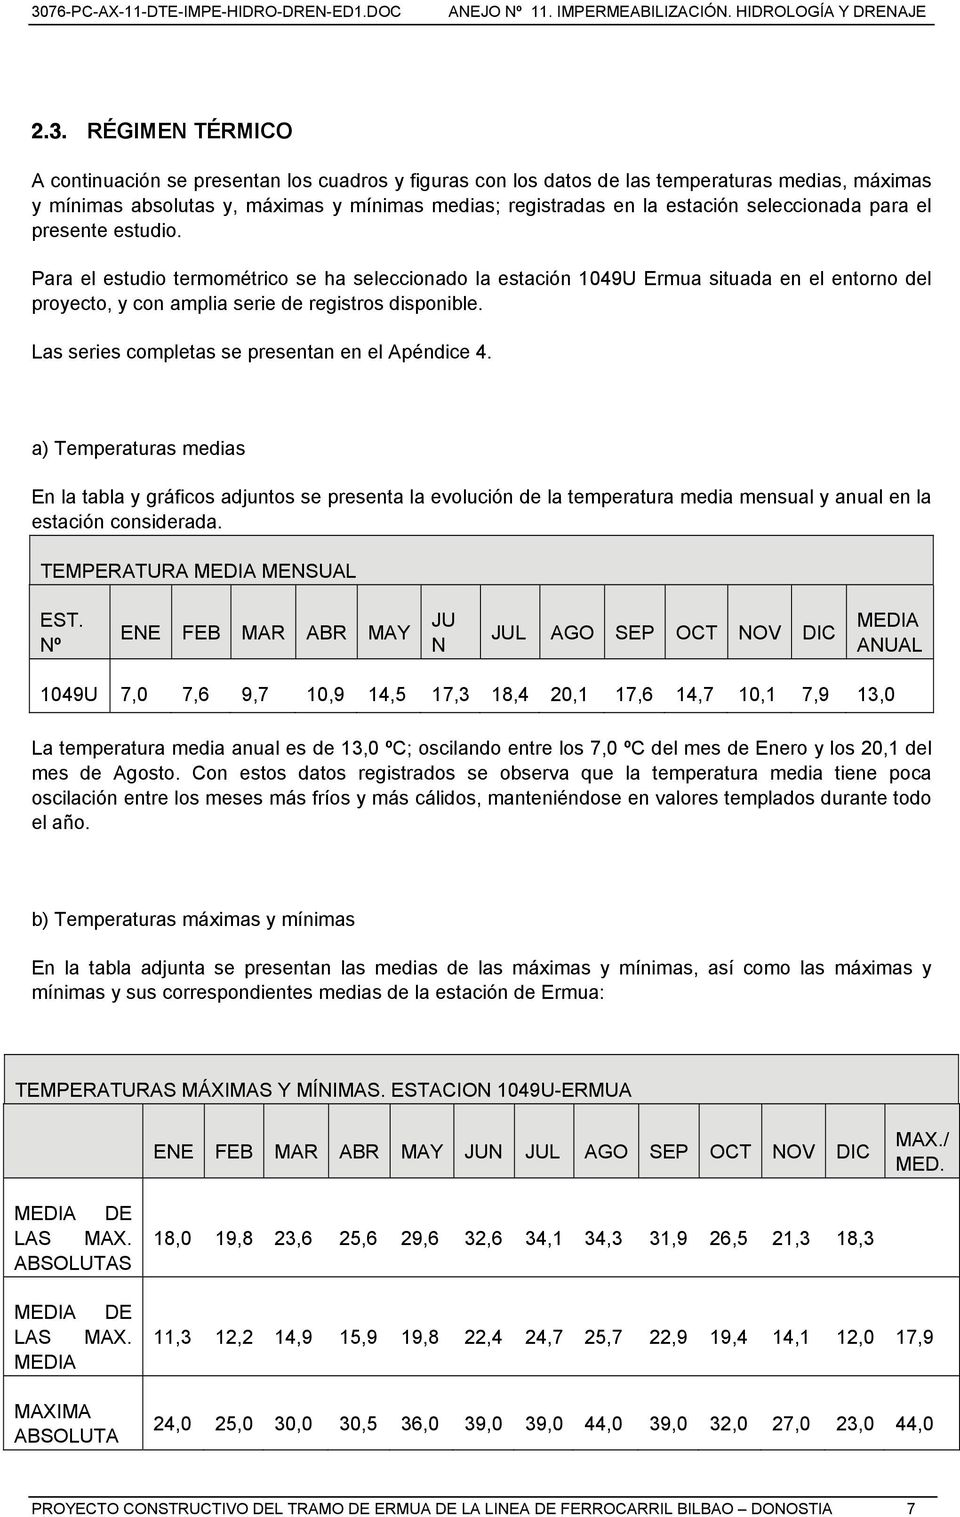 Las series completas se presentan en el Apéndice 4. a) Temperaturas medias En la tabla y gráficos adjuntos se presenta la evolución de la temperatura media mensual y anual en la estación considerada.